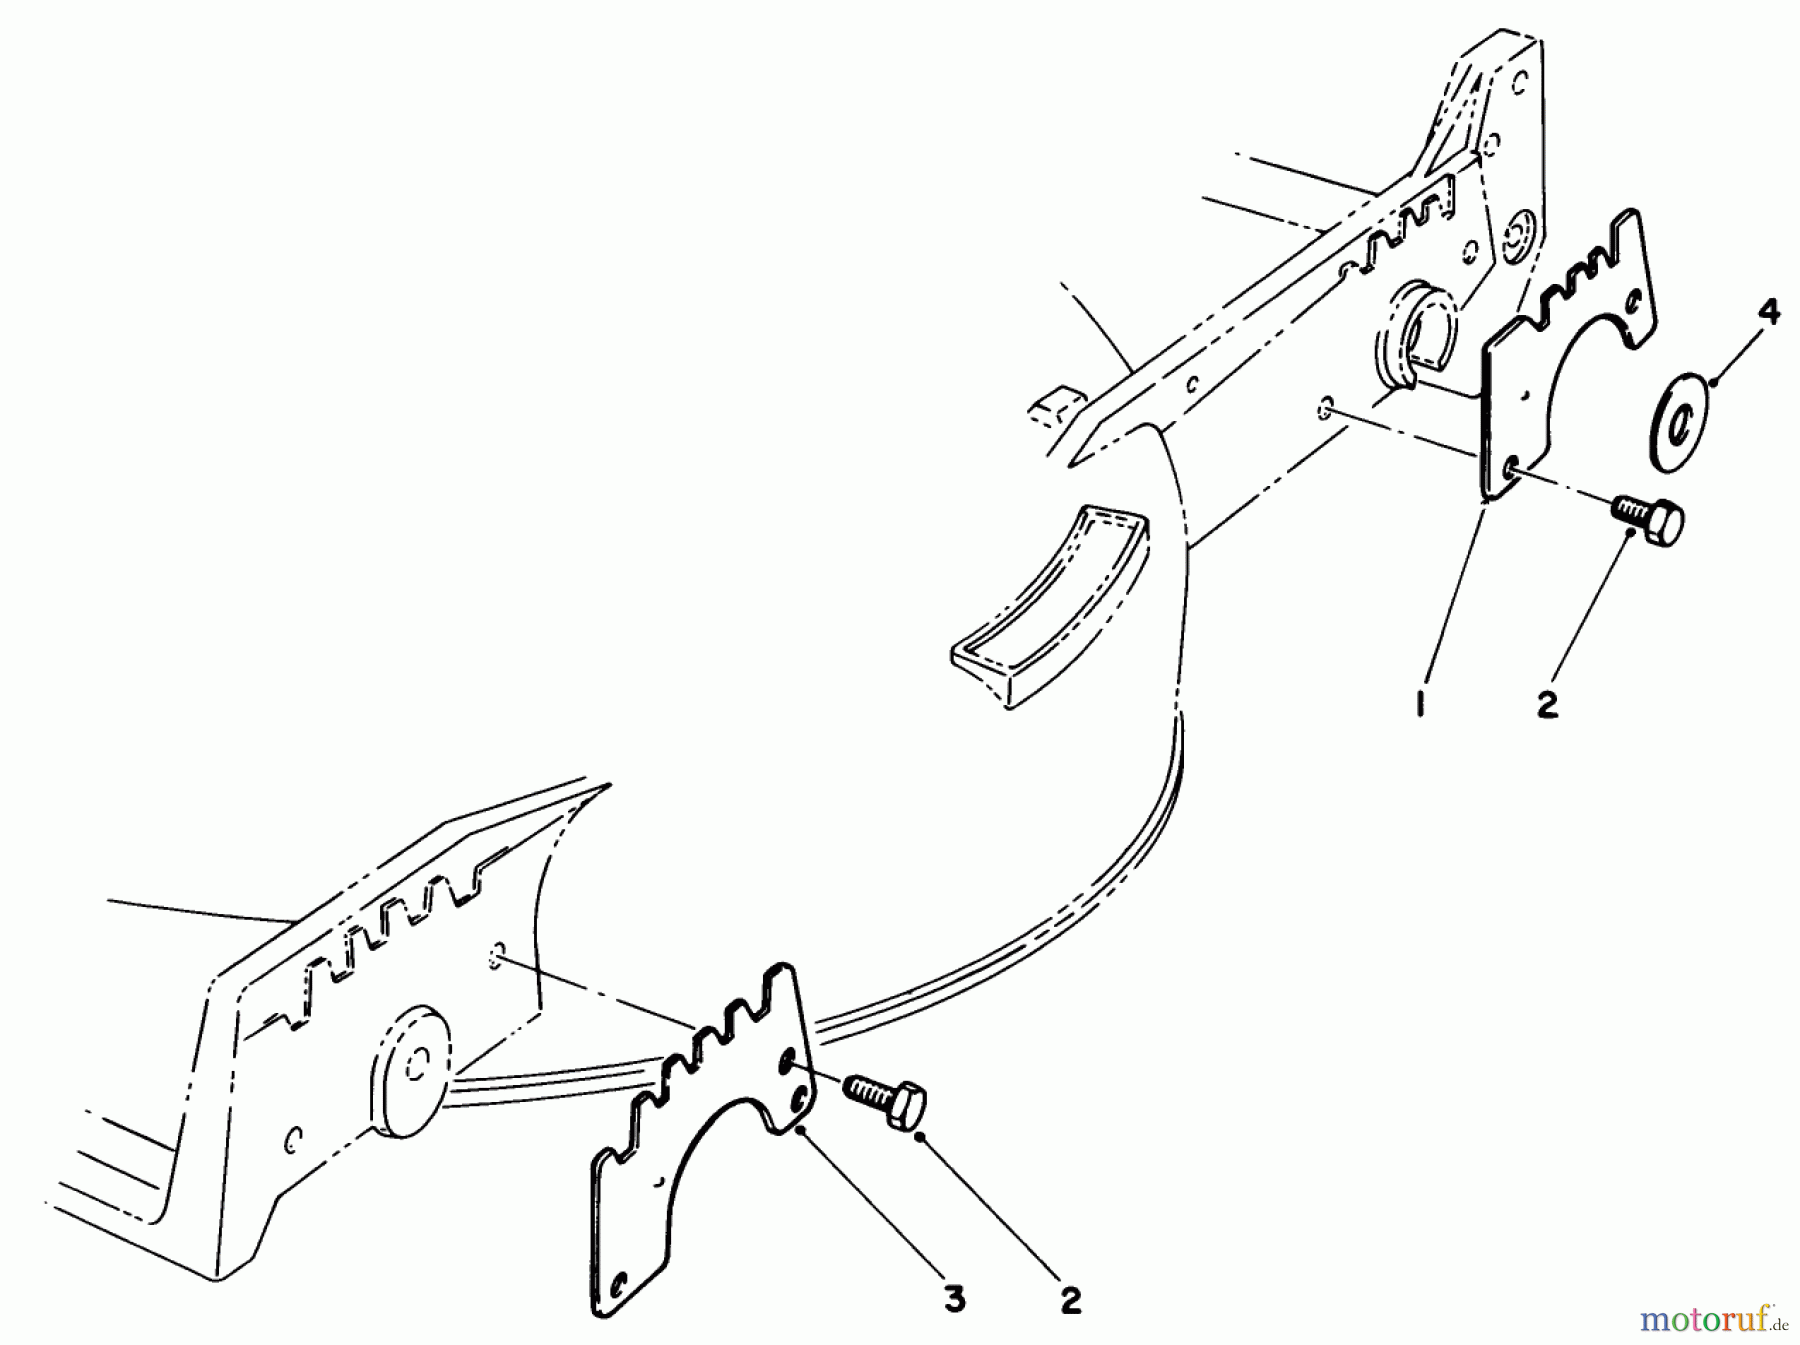  Toro Neu Mowers, Walk-Behind Seite 1 20526 - Toro Lawnmower, 1986 (6000001-6999999) WEAR PLATE KIT NO. 49-4080 (OPTIONAL)